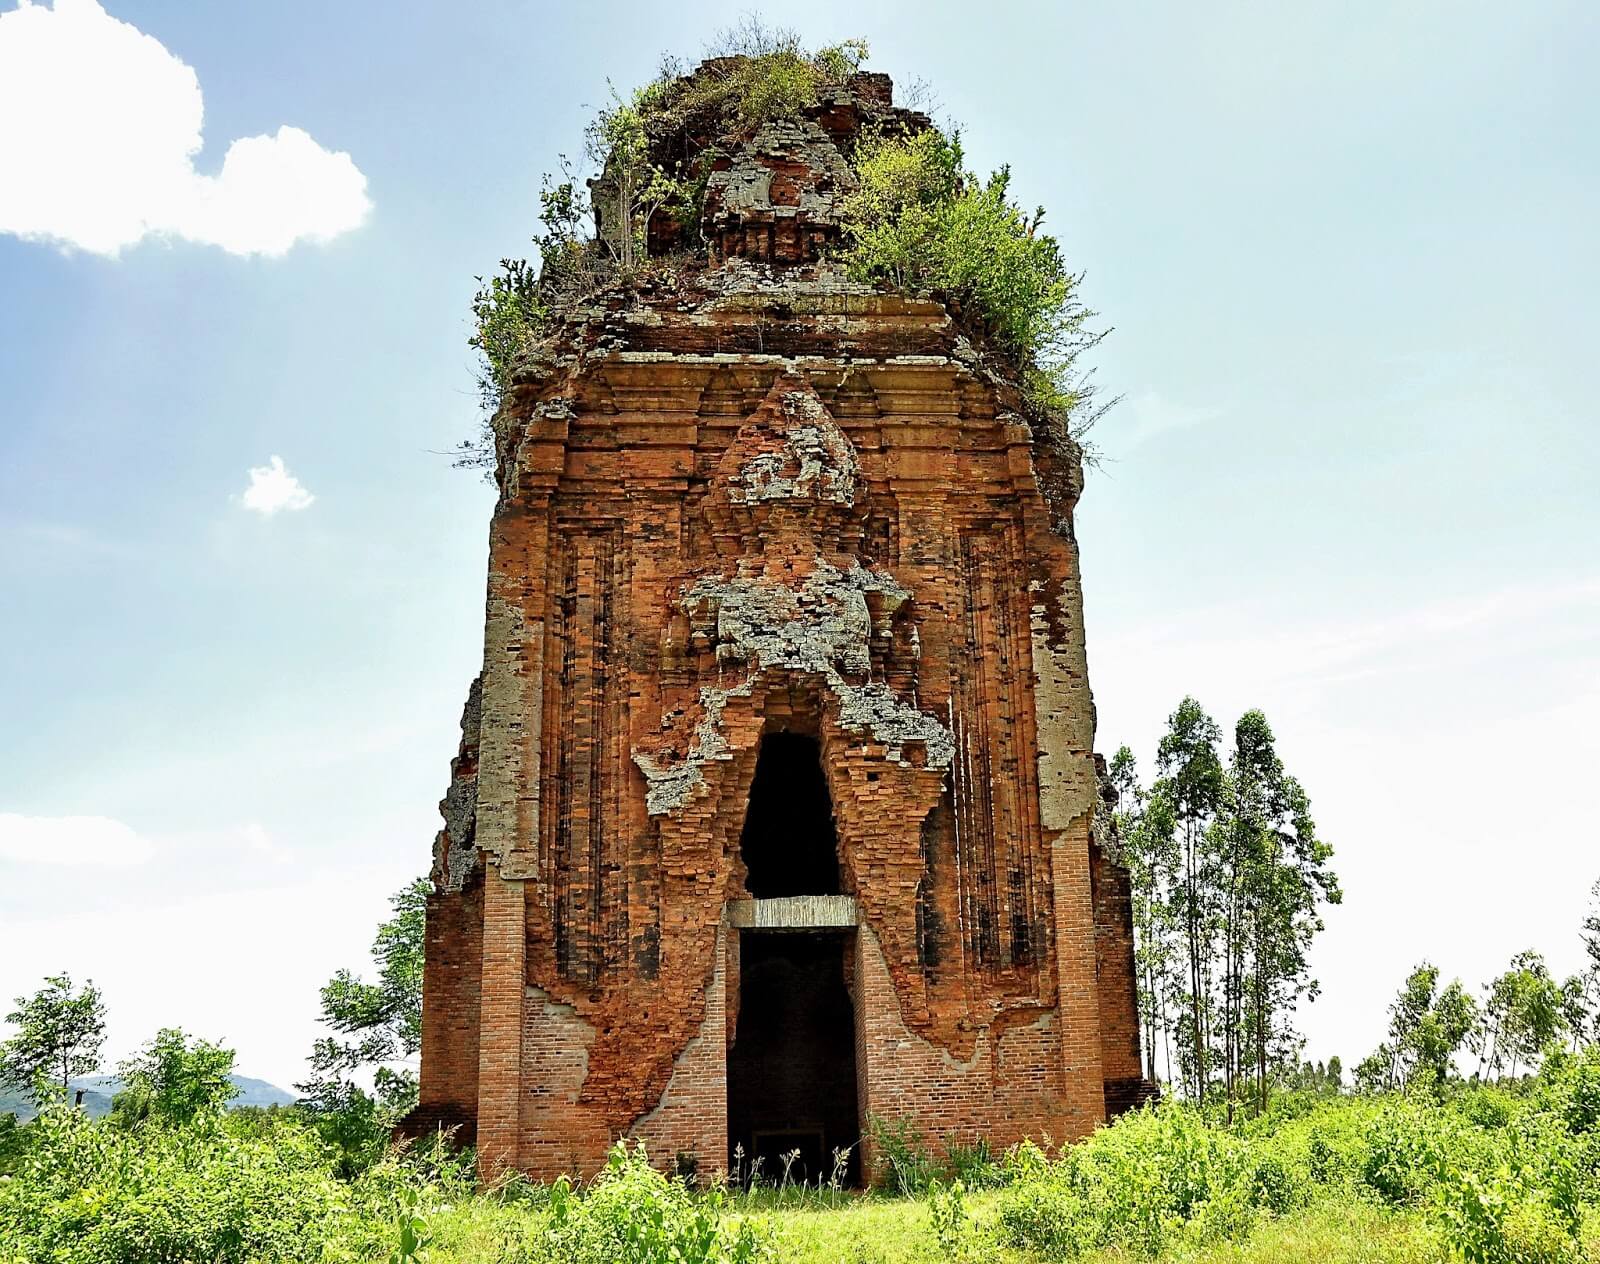 Kiến trúc Tháp Chăm Bình Định